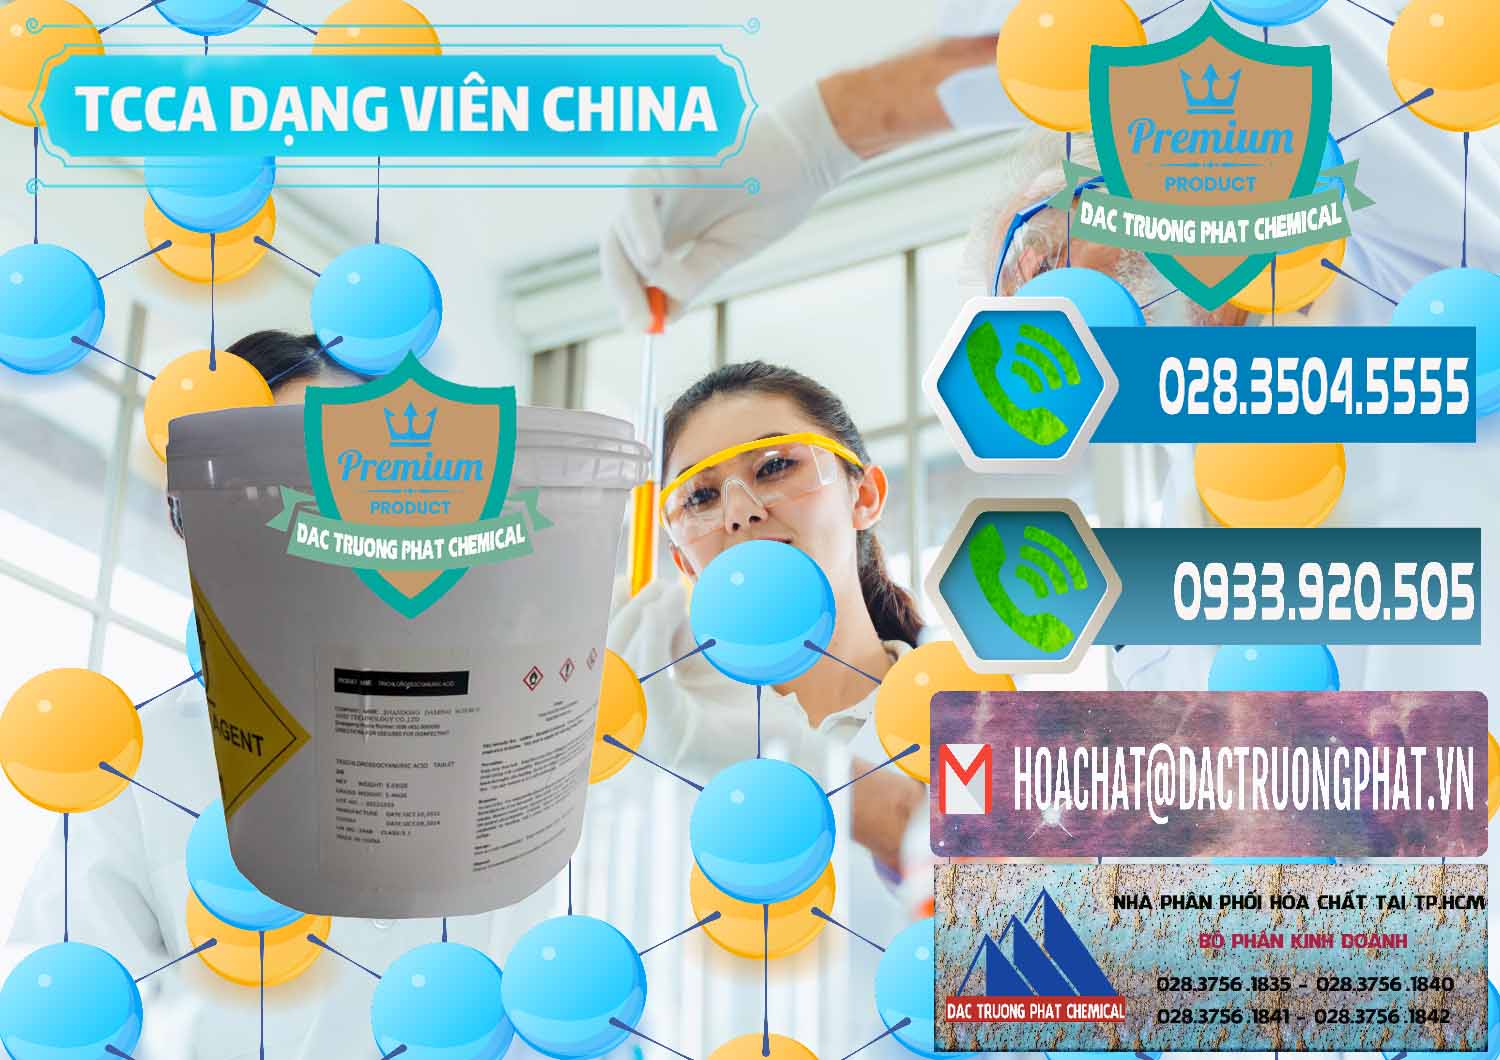 Chuyên bán & phân phối TCCA - Acid Trichloroisocyanuric Dạng Viên Thùng 5kg Trung Quốc China - 0379 - Cty cung cấp và bán hóa chất tại TP.HCM - congtyhoachat.net